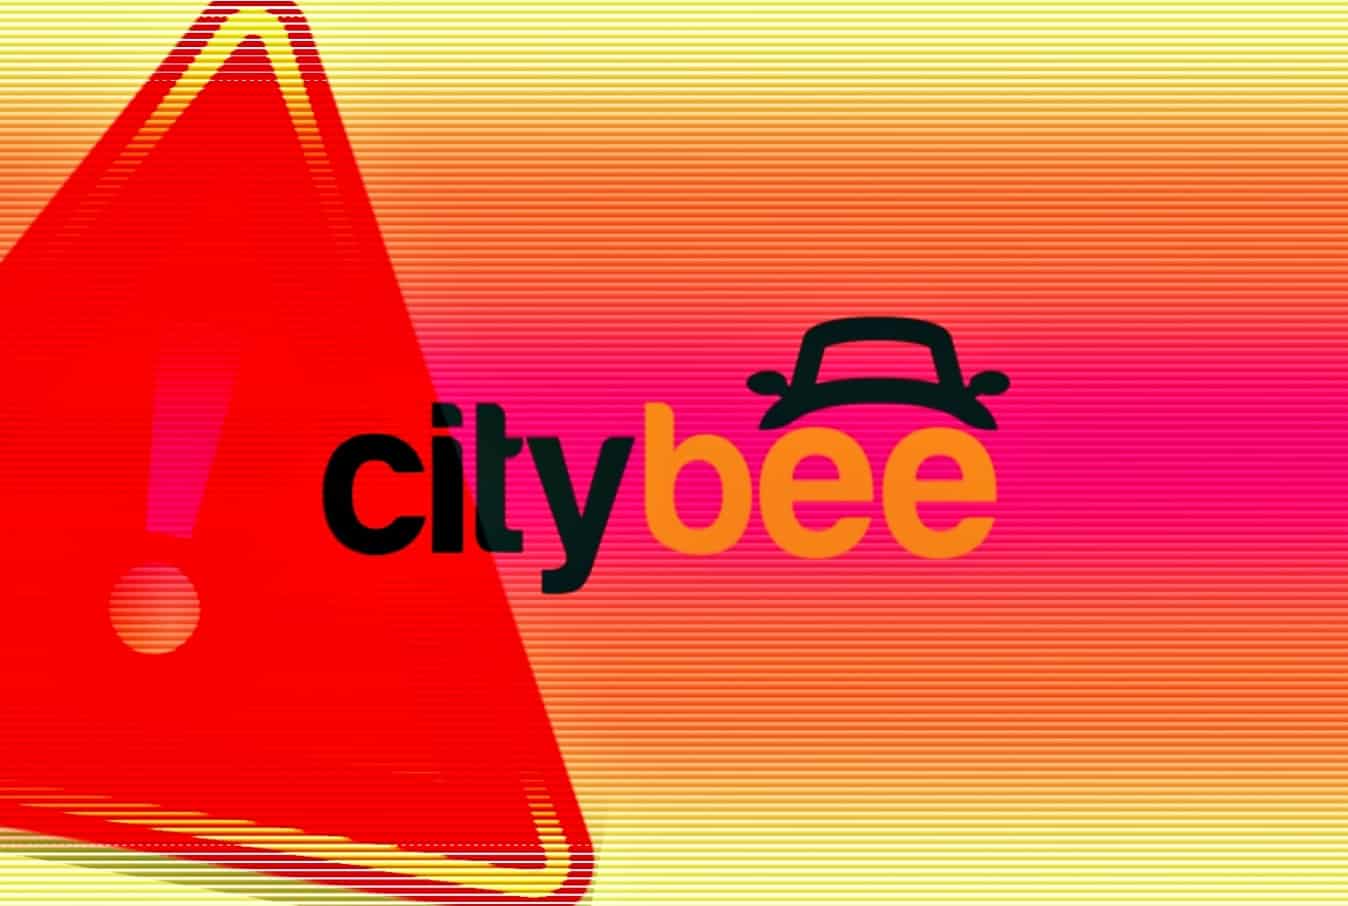 Hacker dumps 100,300 CityBee users' login credentials online